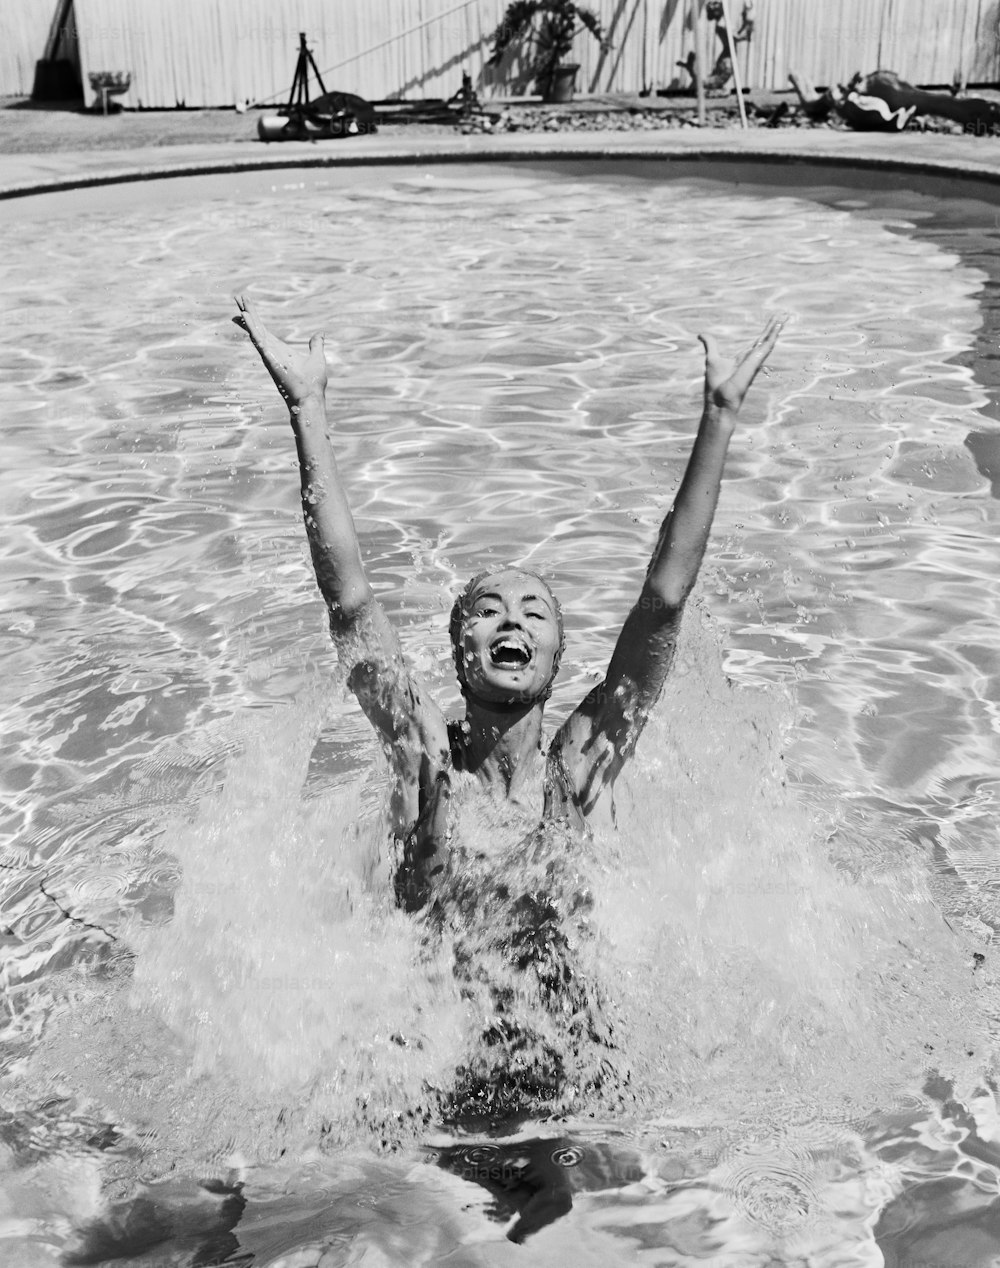 Un giovane ragazzo che nuota in una piscina con le braccia in aria